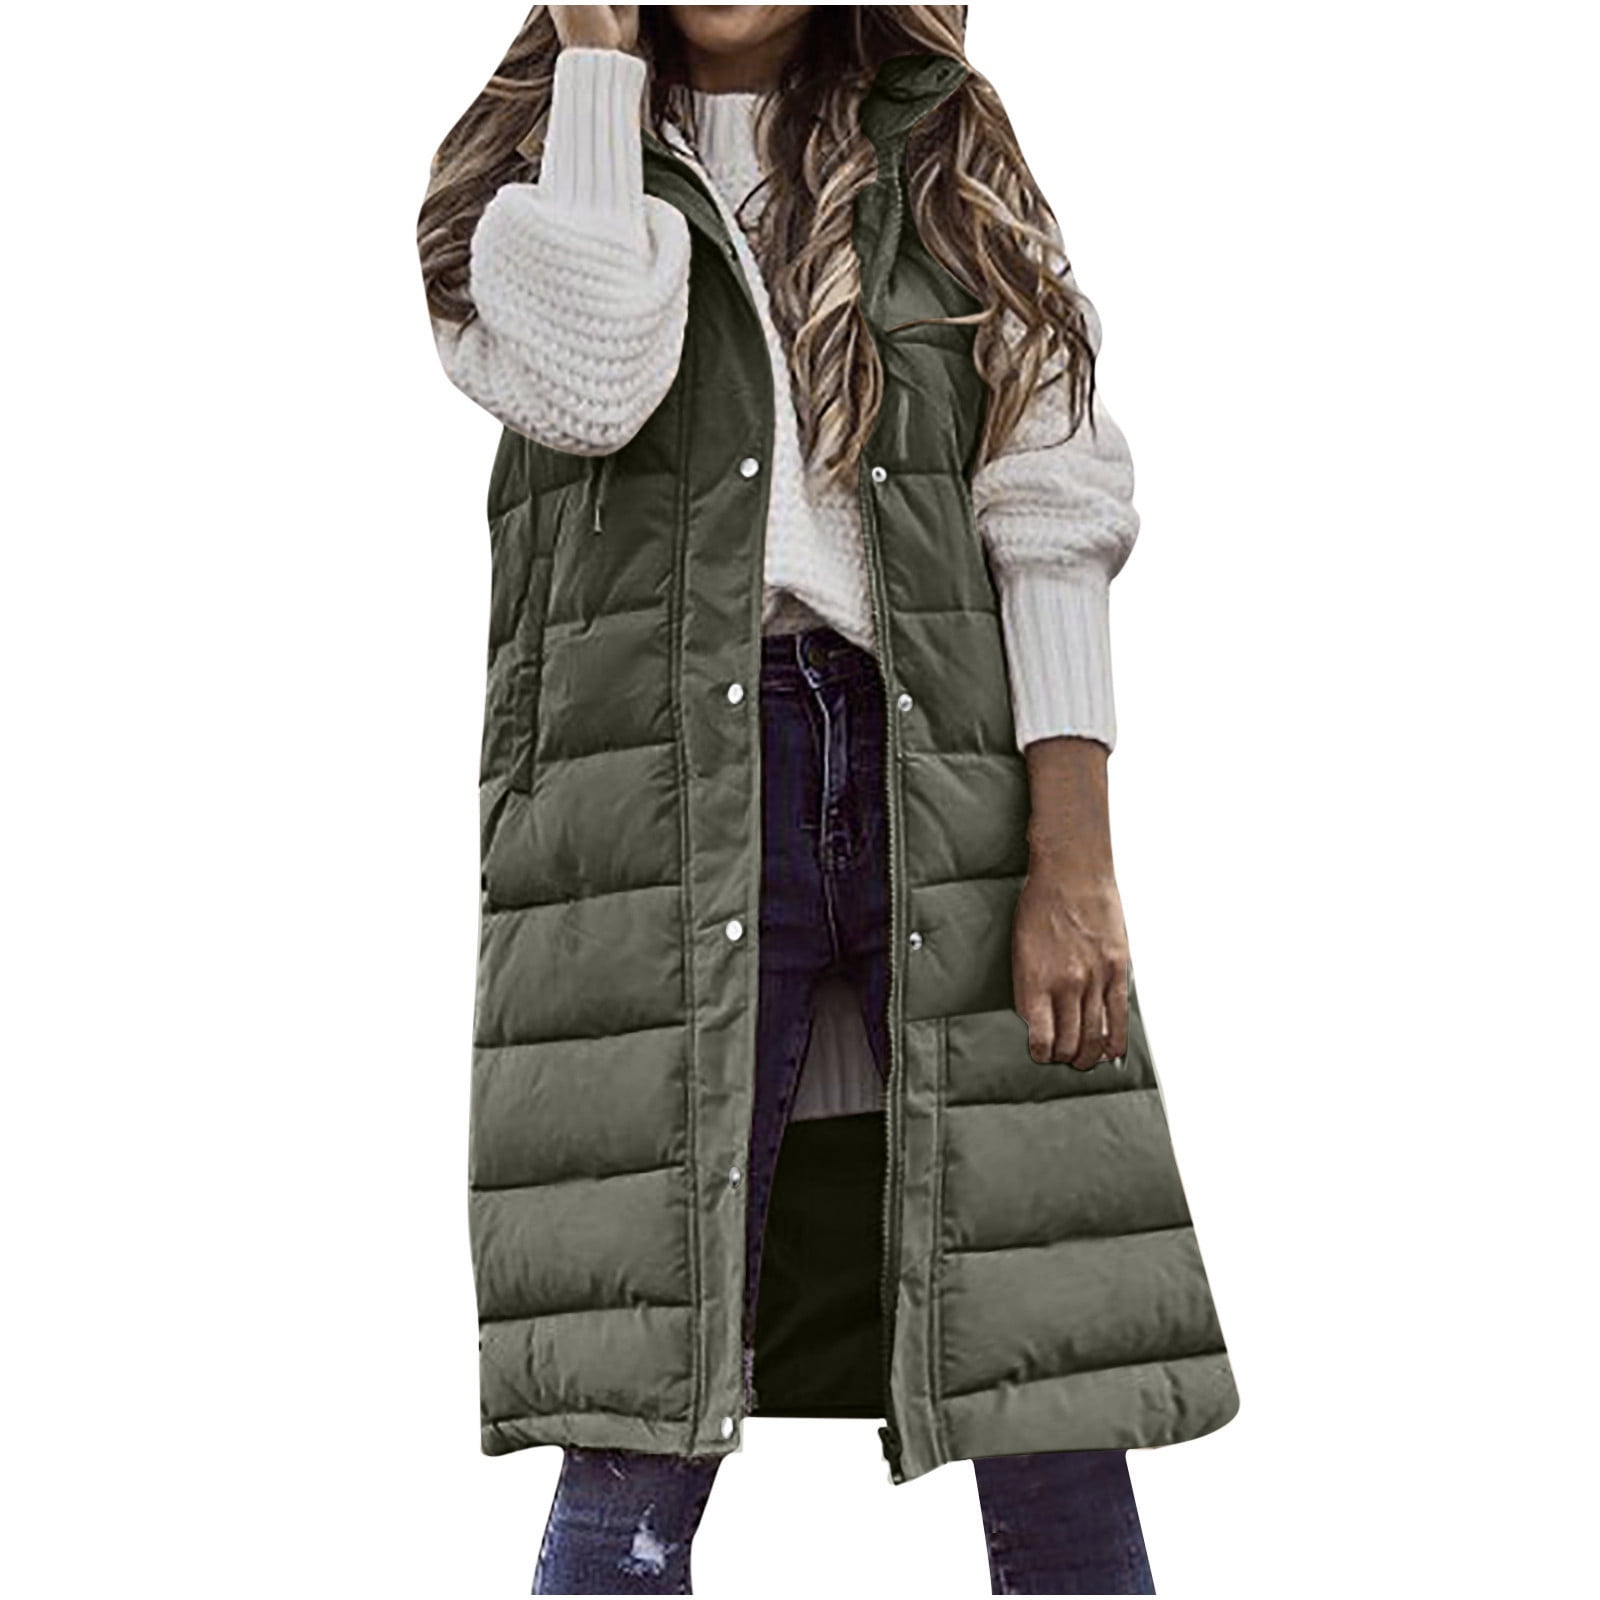 Hueook Winter Vest for Women Lightweight Warm Winter Coats Polar Soft ...